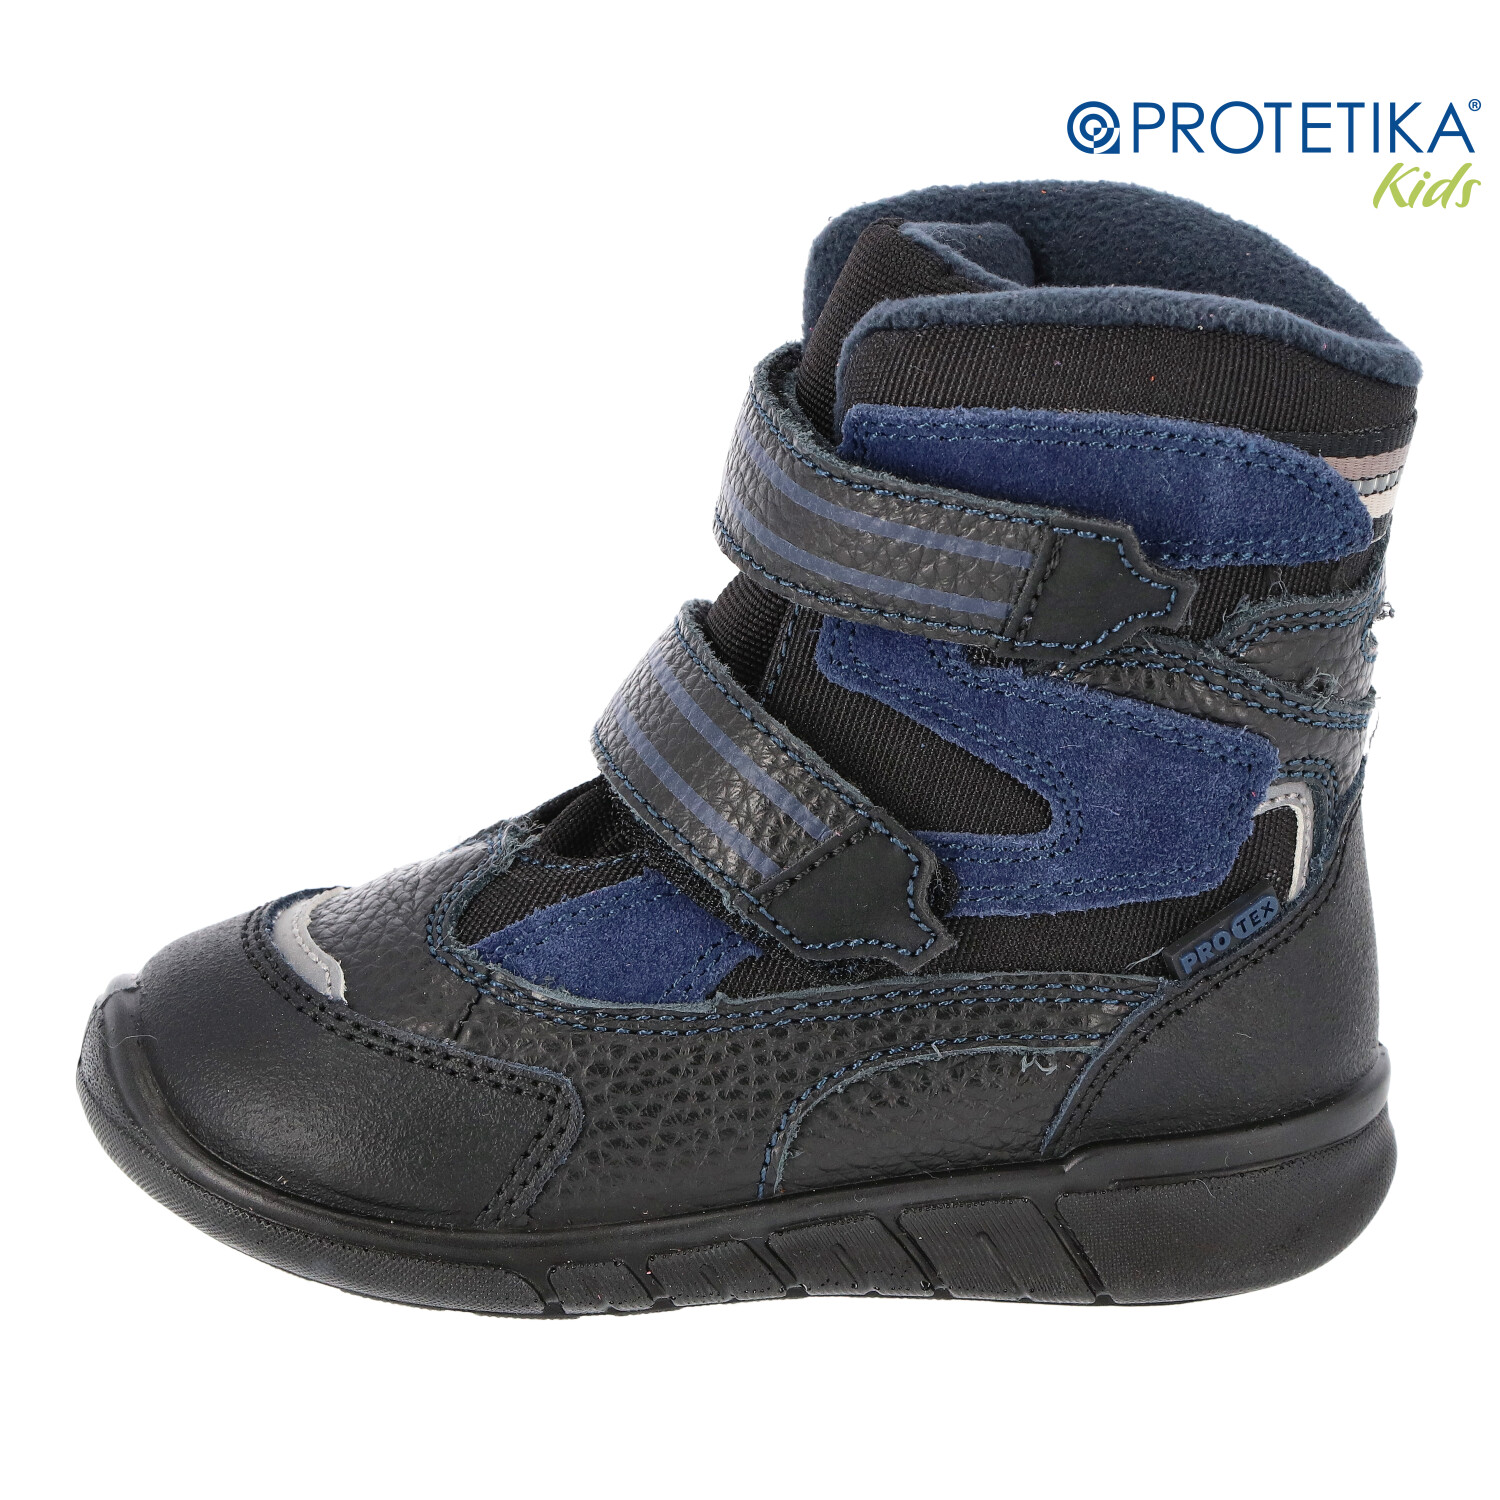 Protetika - zimné topánky s membránou PRO-tex MARON navy - zateplené